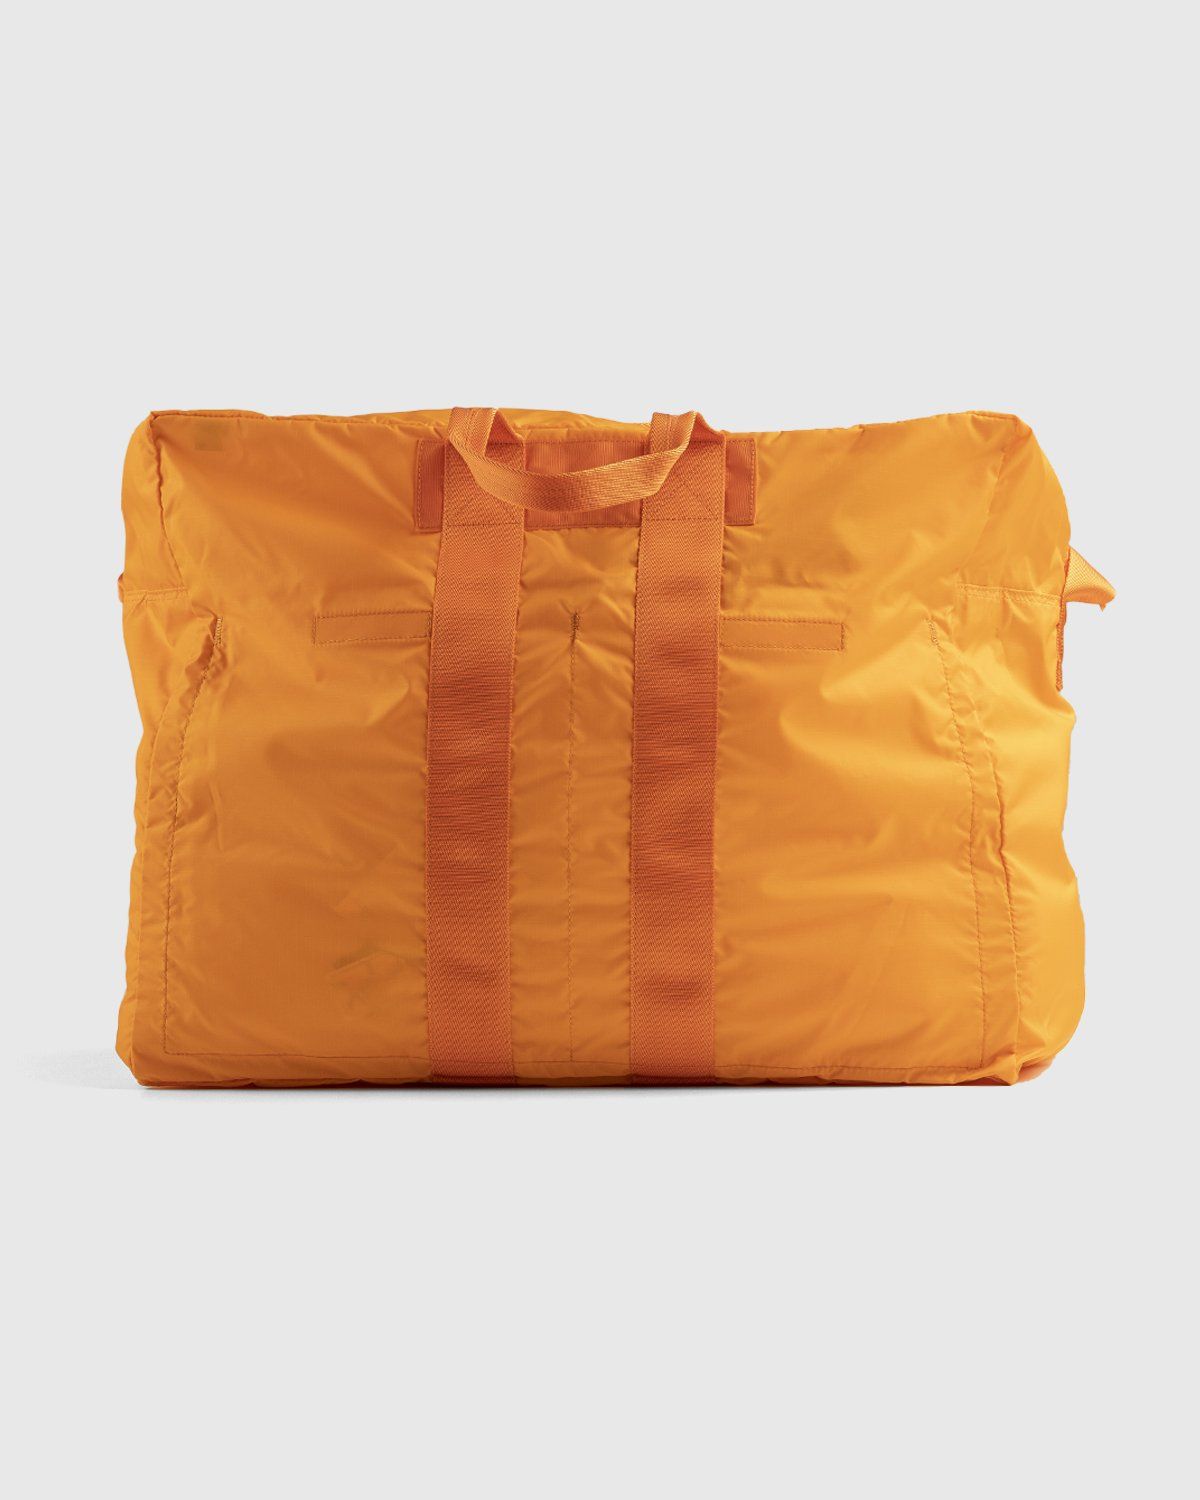 Porter-Yoshida & Co. – Flex 2-Way Duffle Bag Orange - Duffle & Top Handle Bags - Orange - Image 2